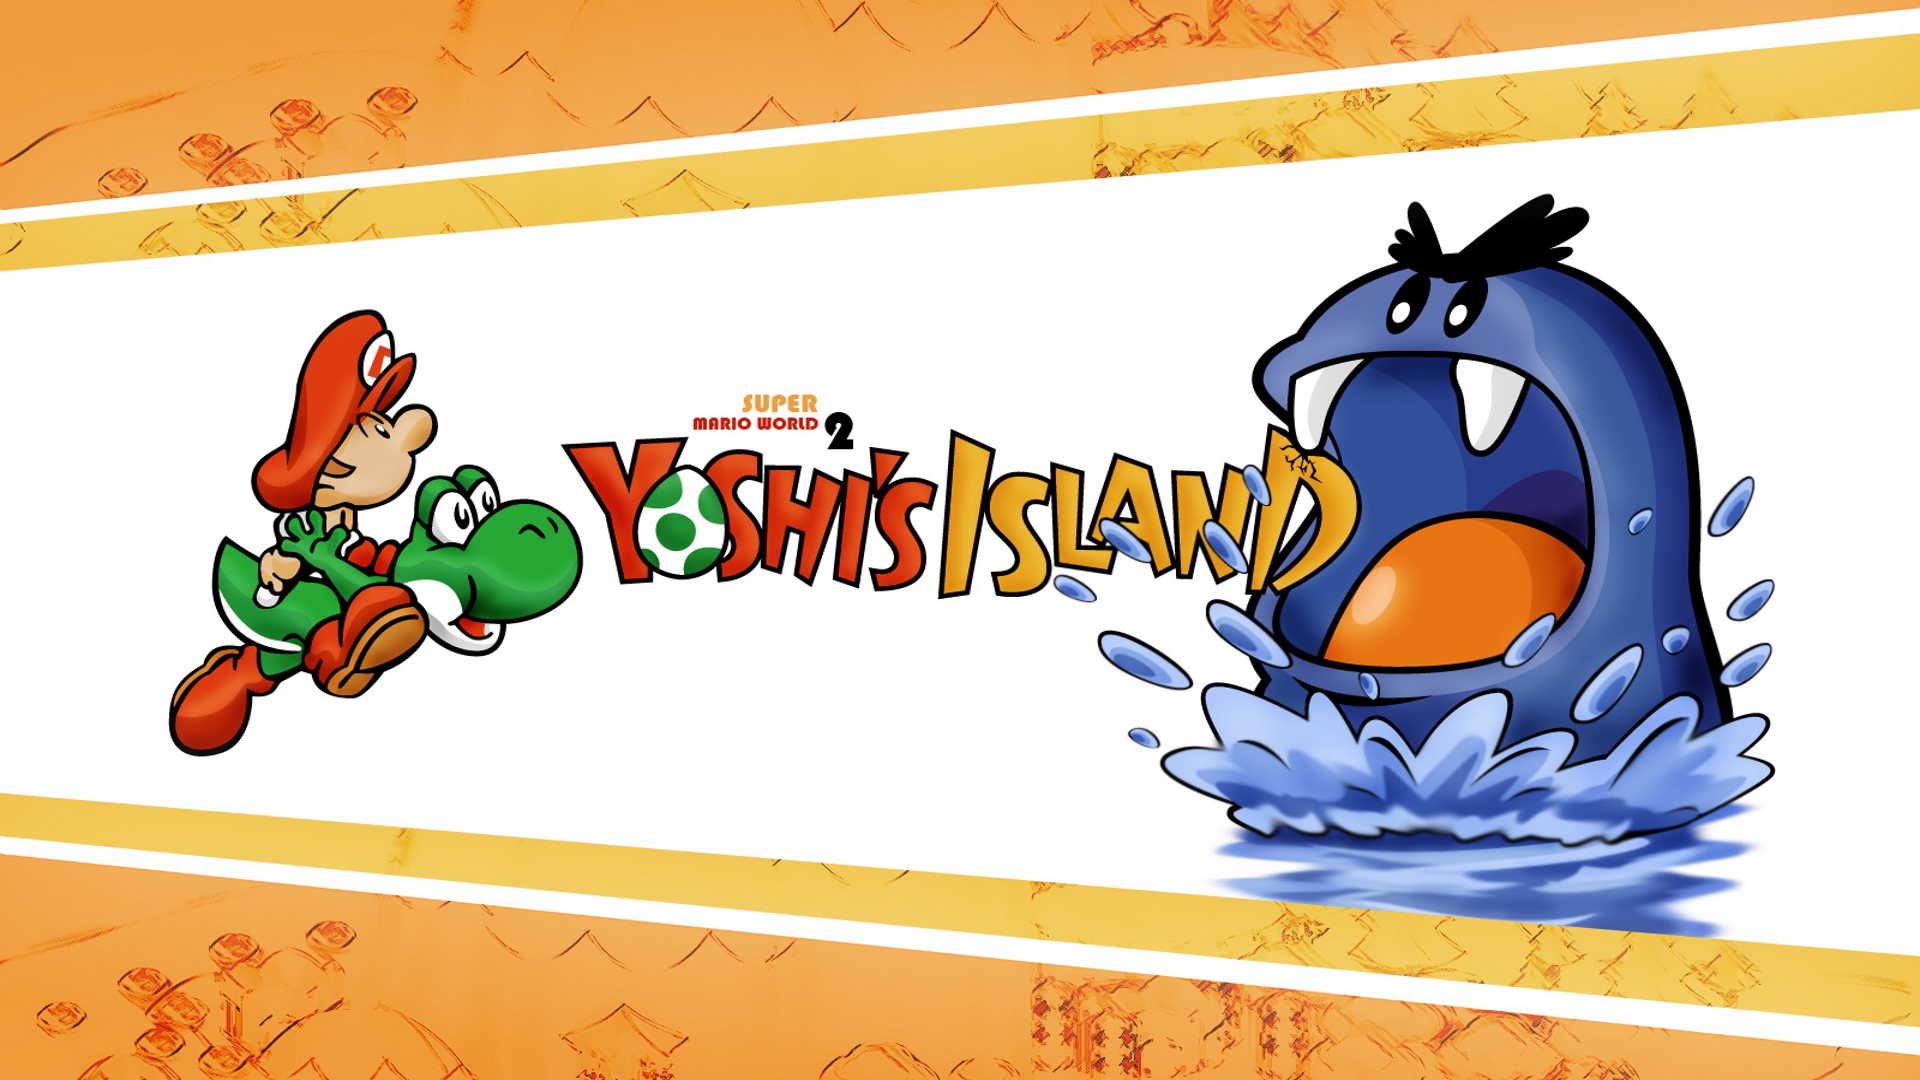 video game, super mario world 2: yoshi's island, baby mario, yoshi, mario